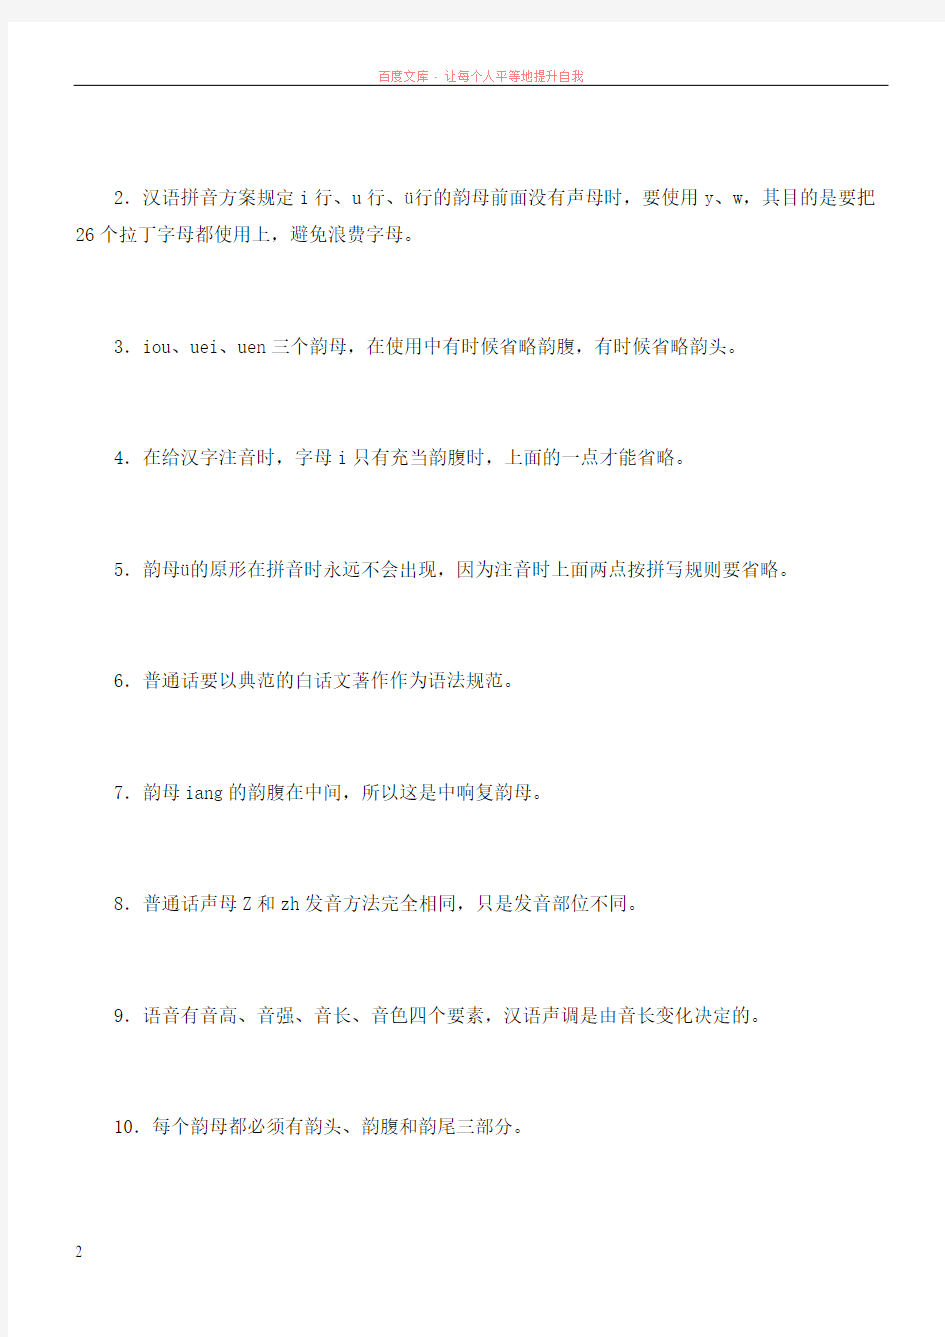 现代汉语专题形成性考核册1-4答案(电大)